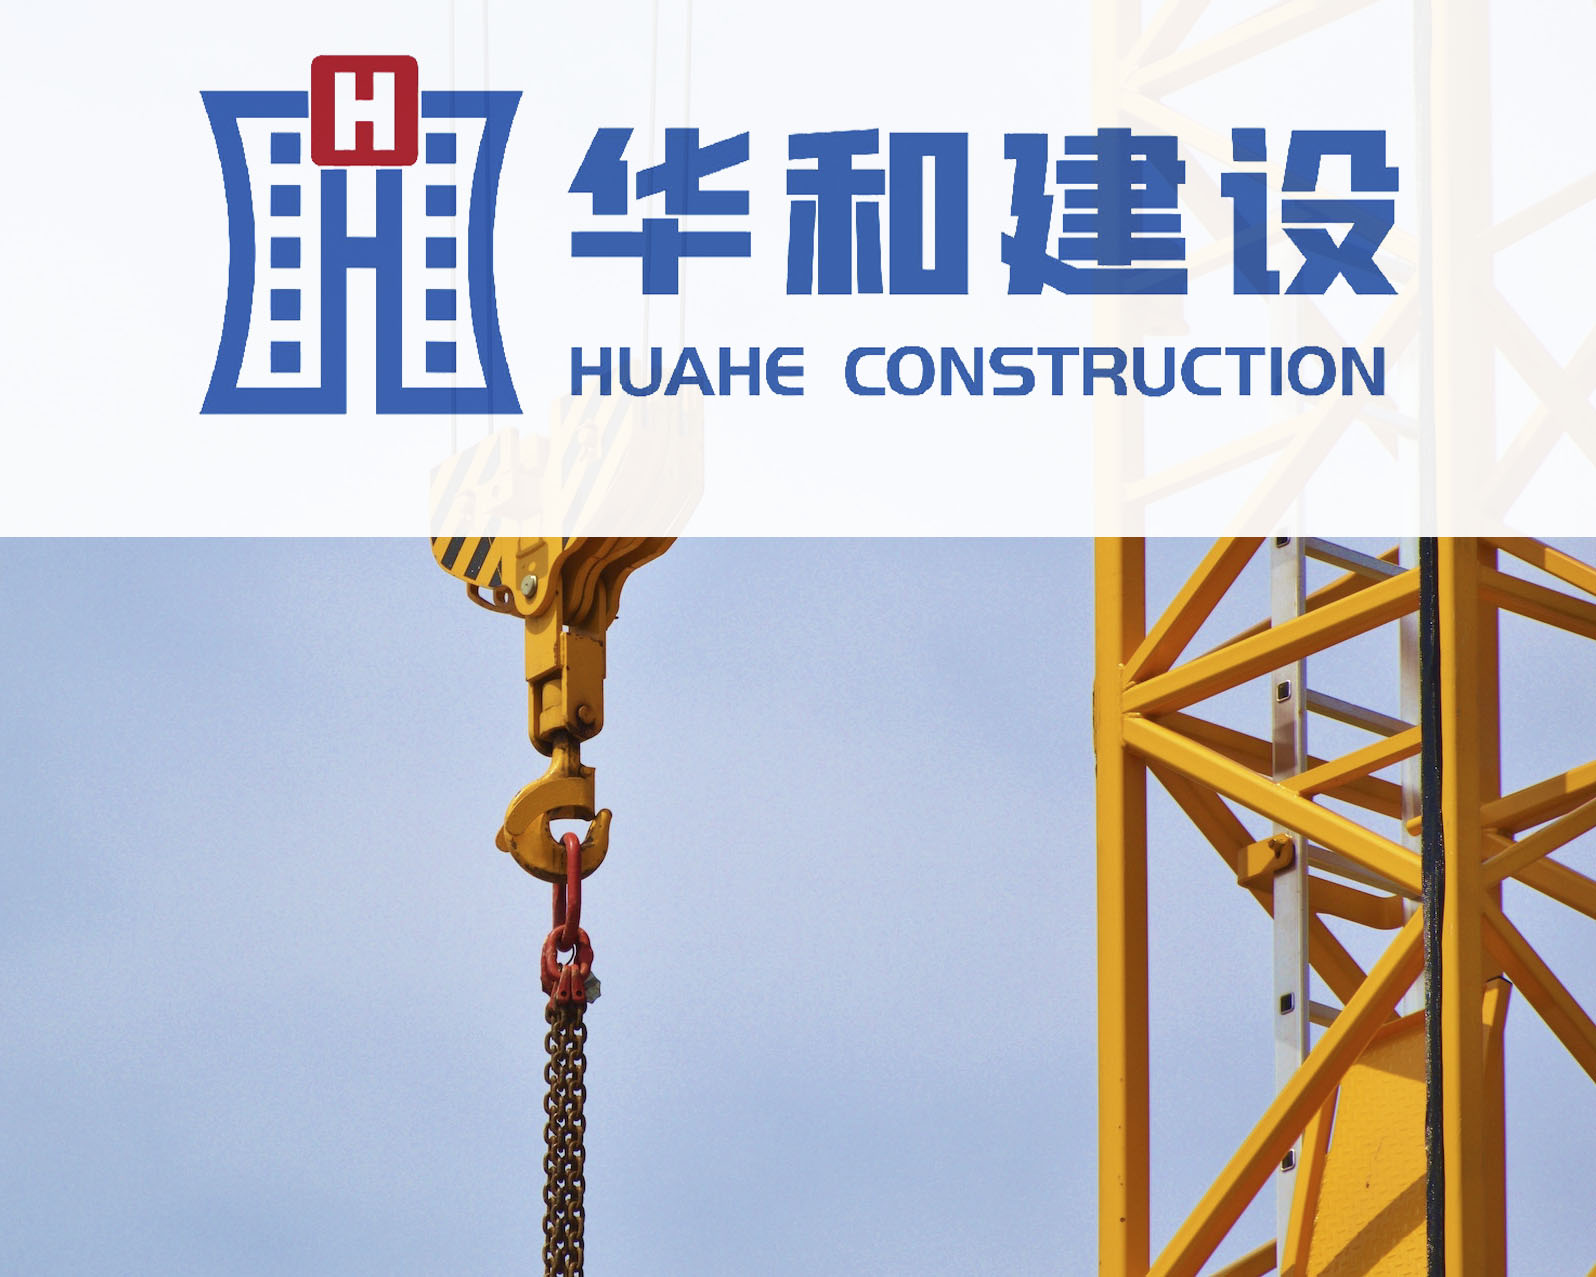 杭州威尼斯vns08866登录建设集团股份有限公司